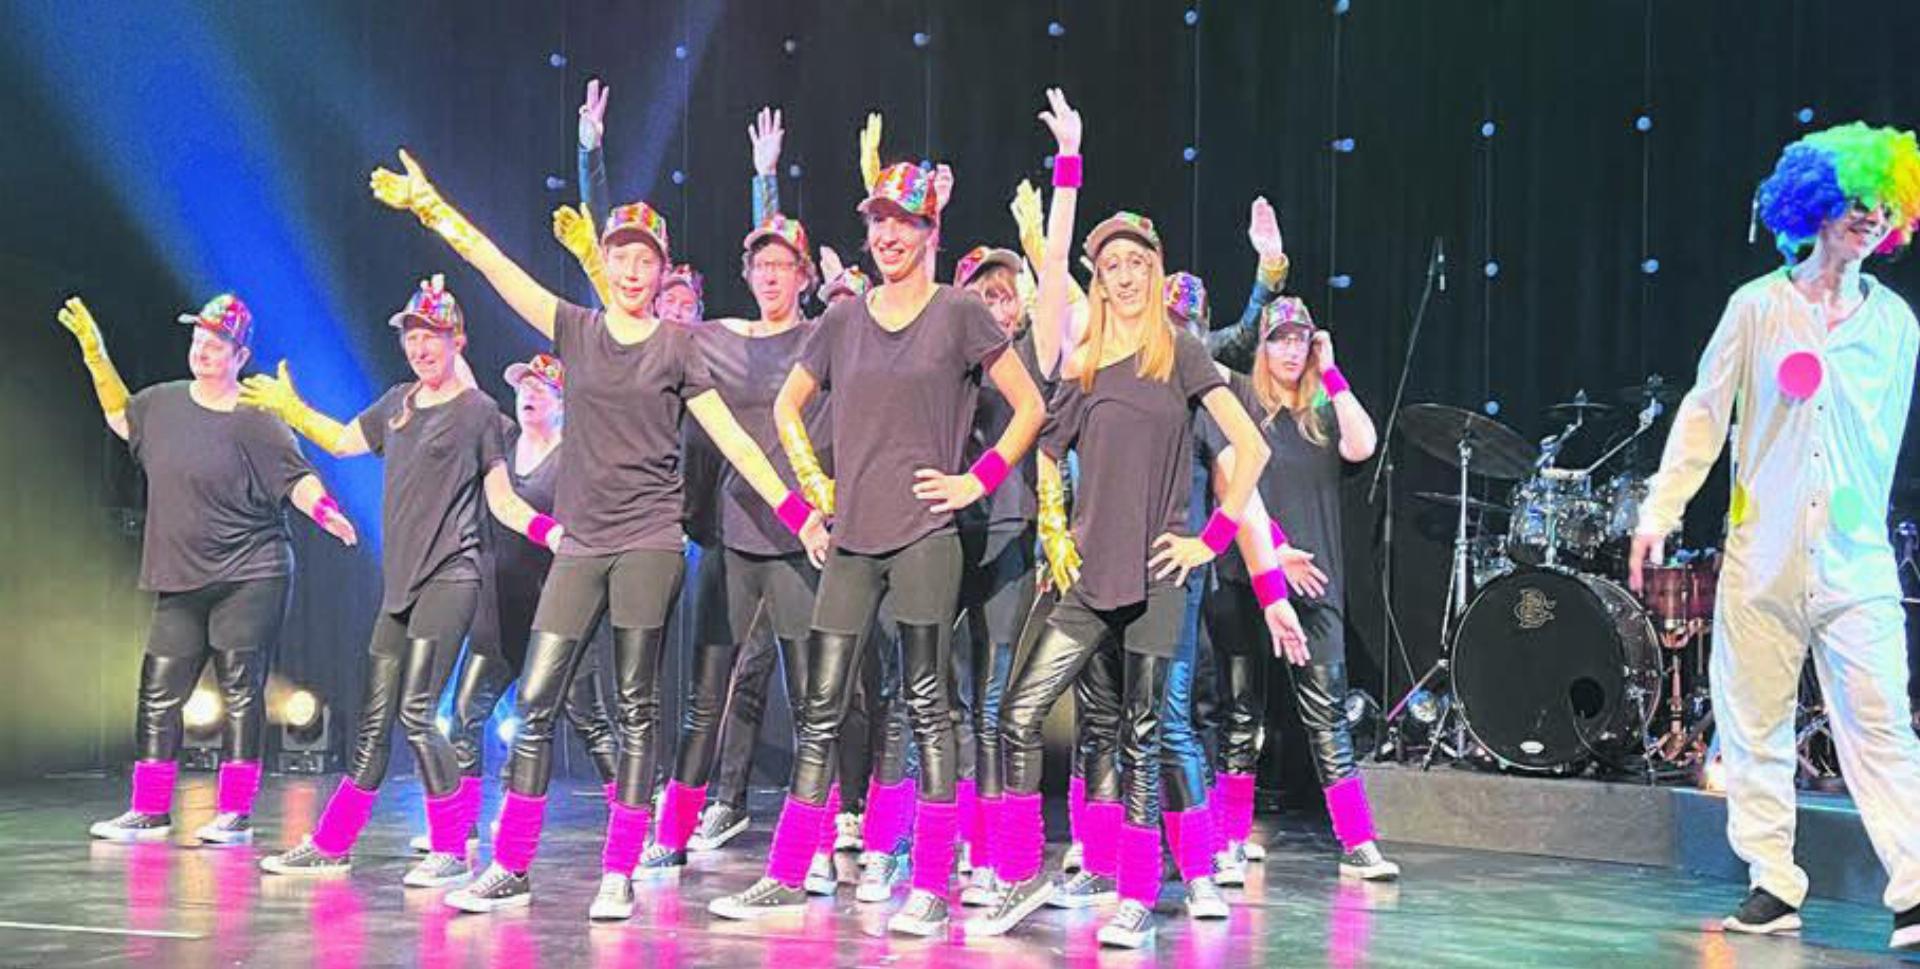 Die PlusSport Tanzgruppe «Dance4all» ist seit zehn Jahren erfolgreich unterwegs und der Höhepunkt des Abends. Bilder: Walter Minder